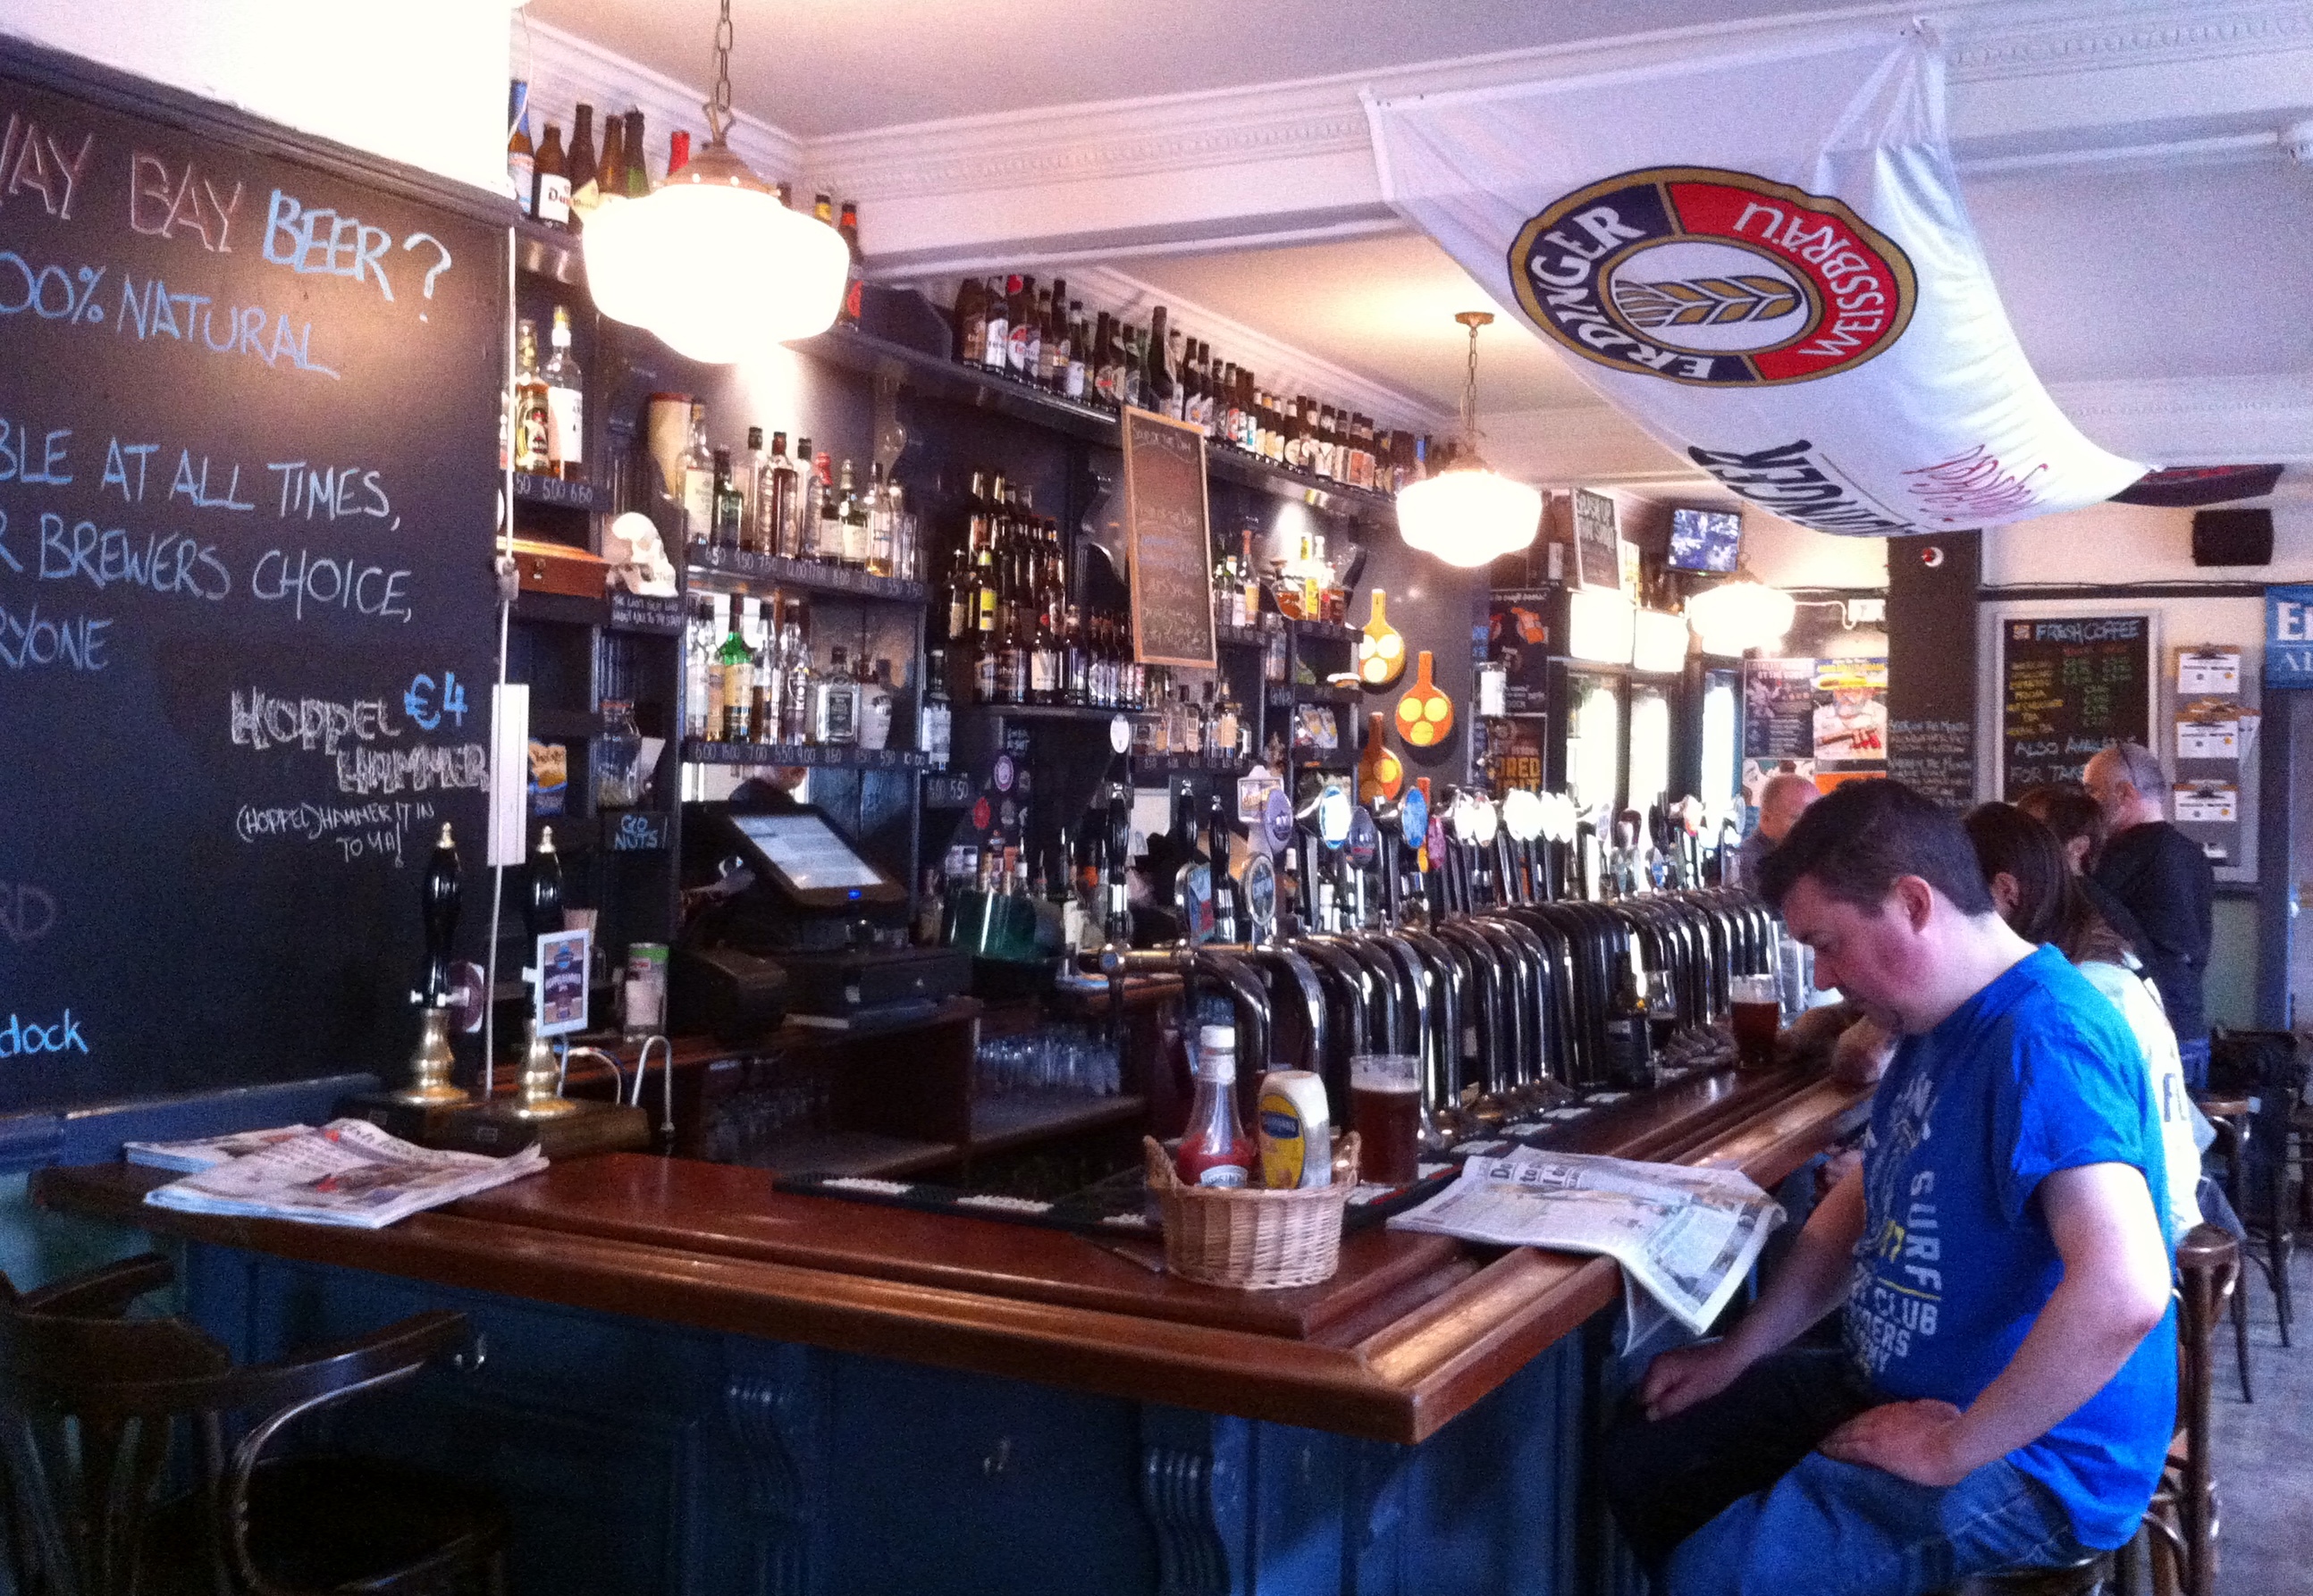 Ελληνική μπιραρία ανάμεσα στις καλύτερες παγκοσμίως: Η «Pub» στο Χαλάνδρι που τρέλανε τους εμπειρογνώμονες [εικόνες] | iefimerida.gr 6